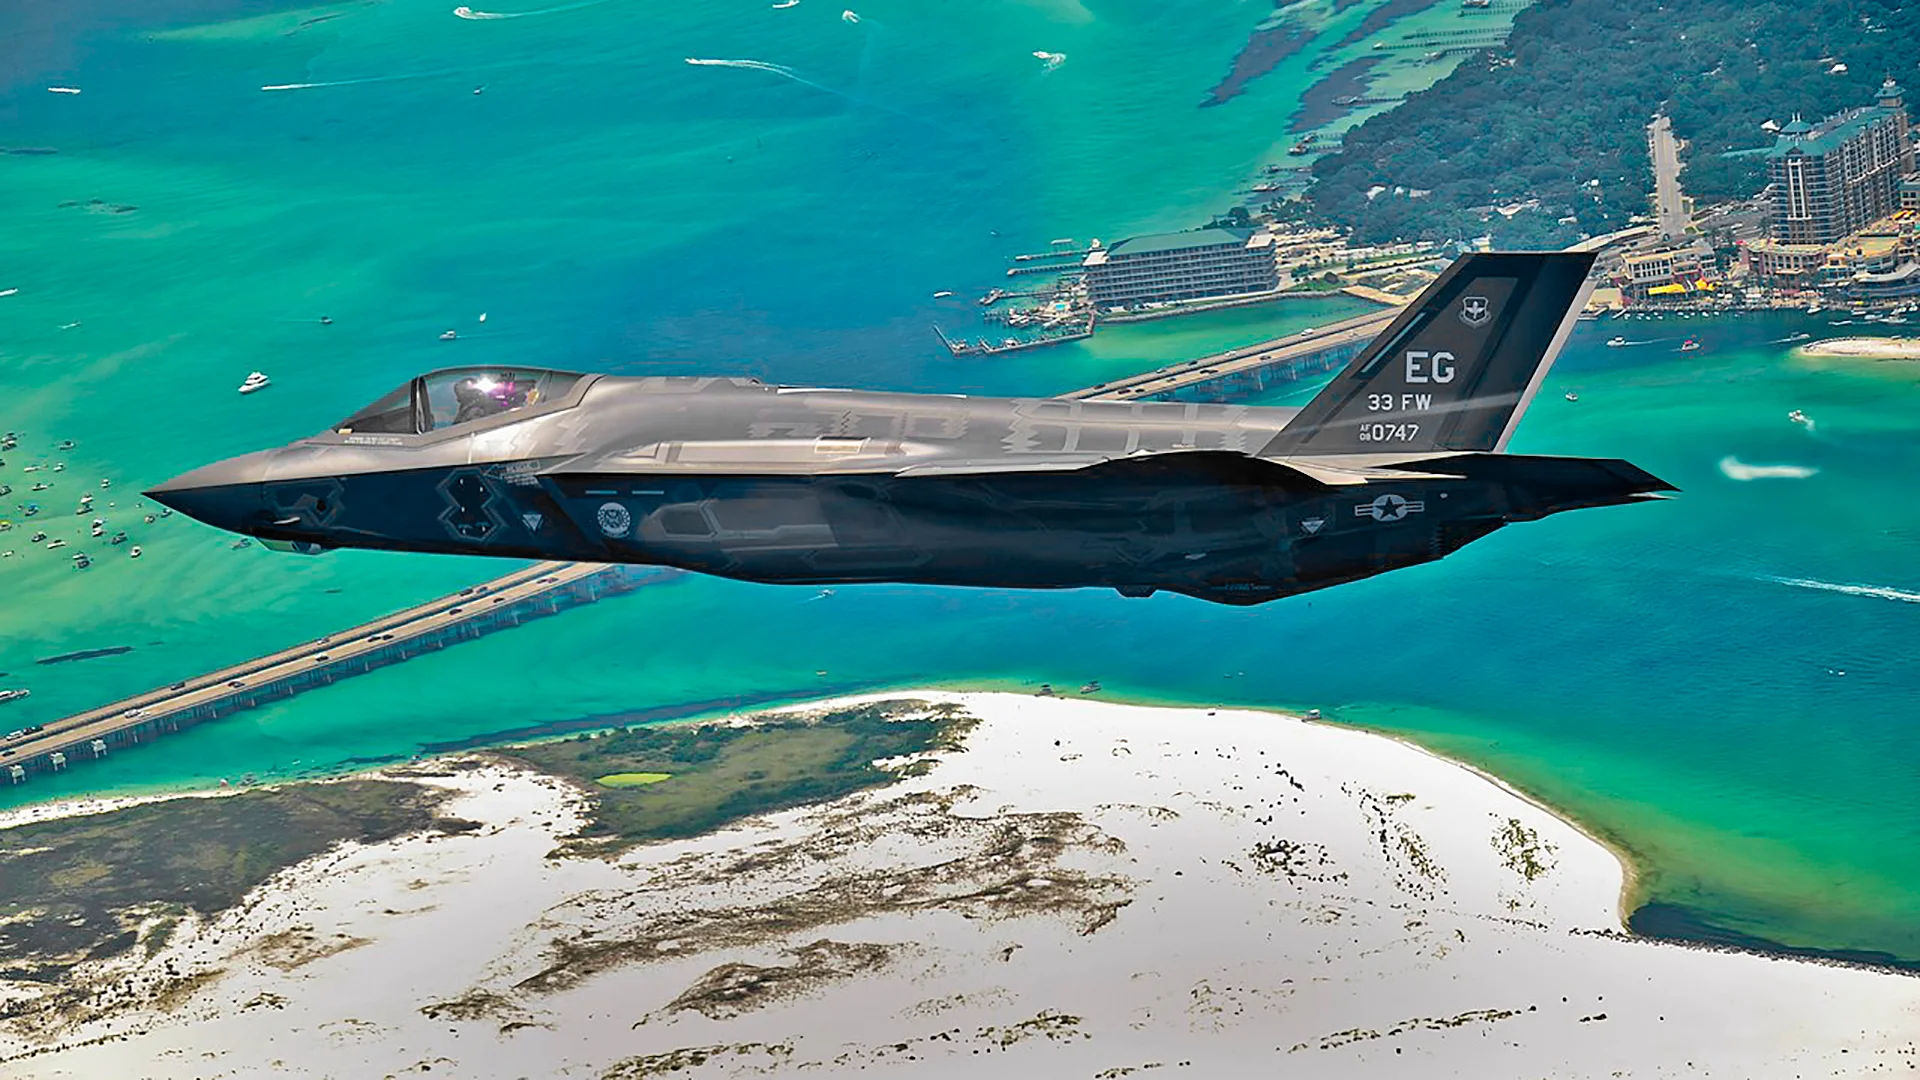 De Amerikaanse luchtmacht waarschuwt inwoners van Florida voor lawaaiige avonden vanwege vluchten van F-35 Lightning II-gevechtsvliegtuigen van de vijfde generatie.